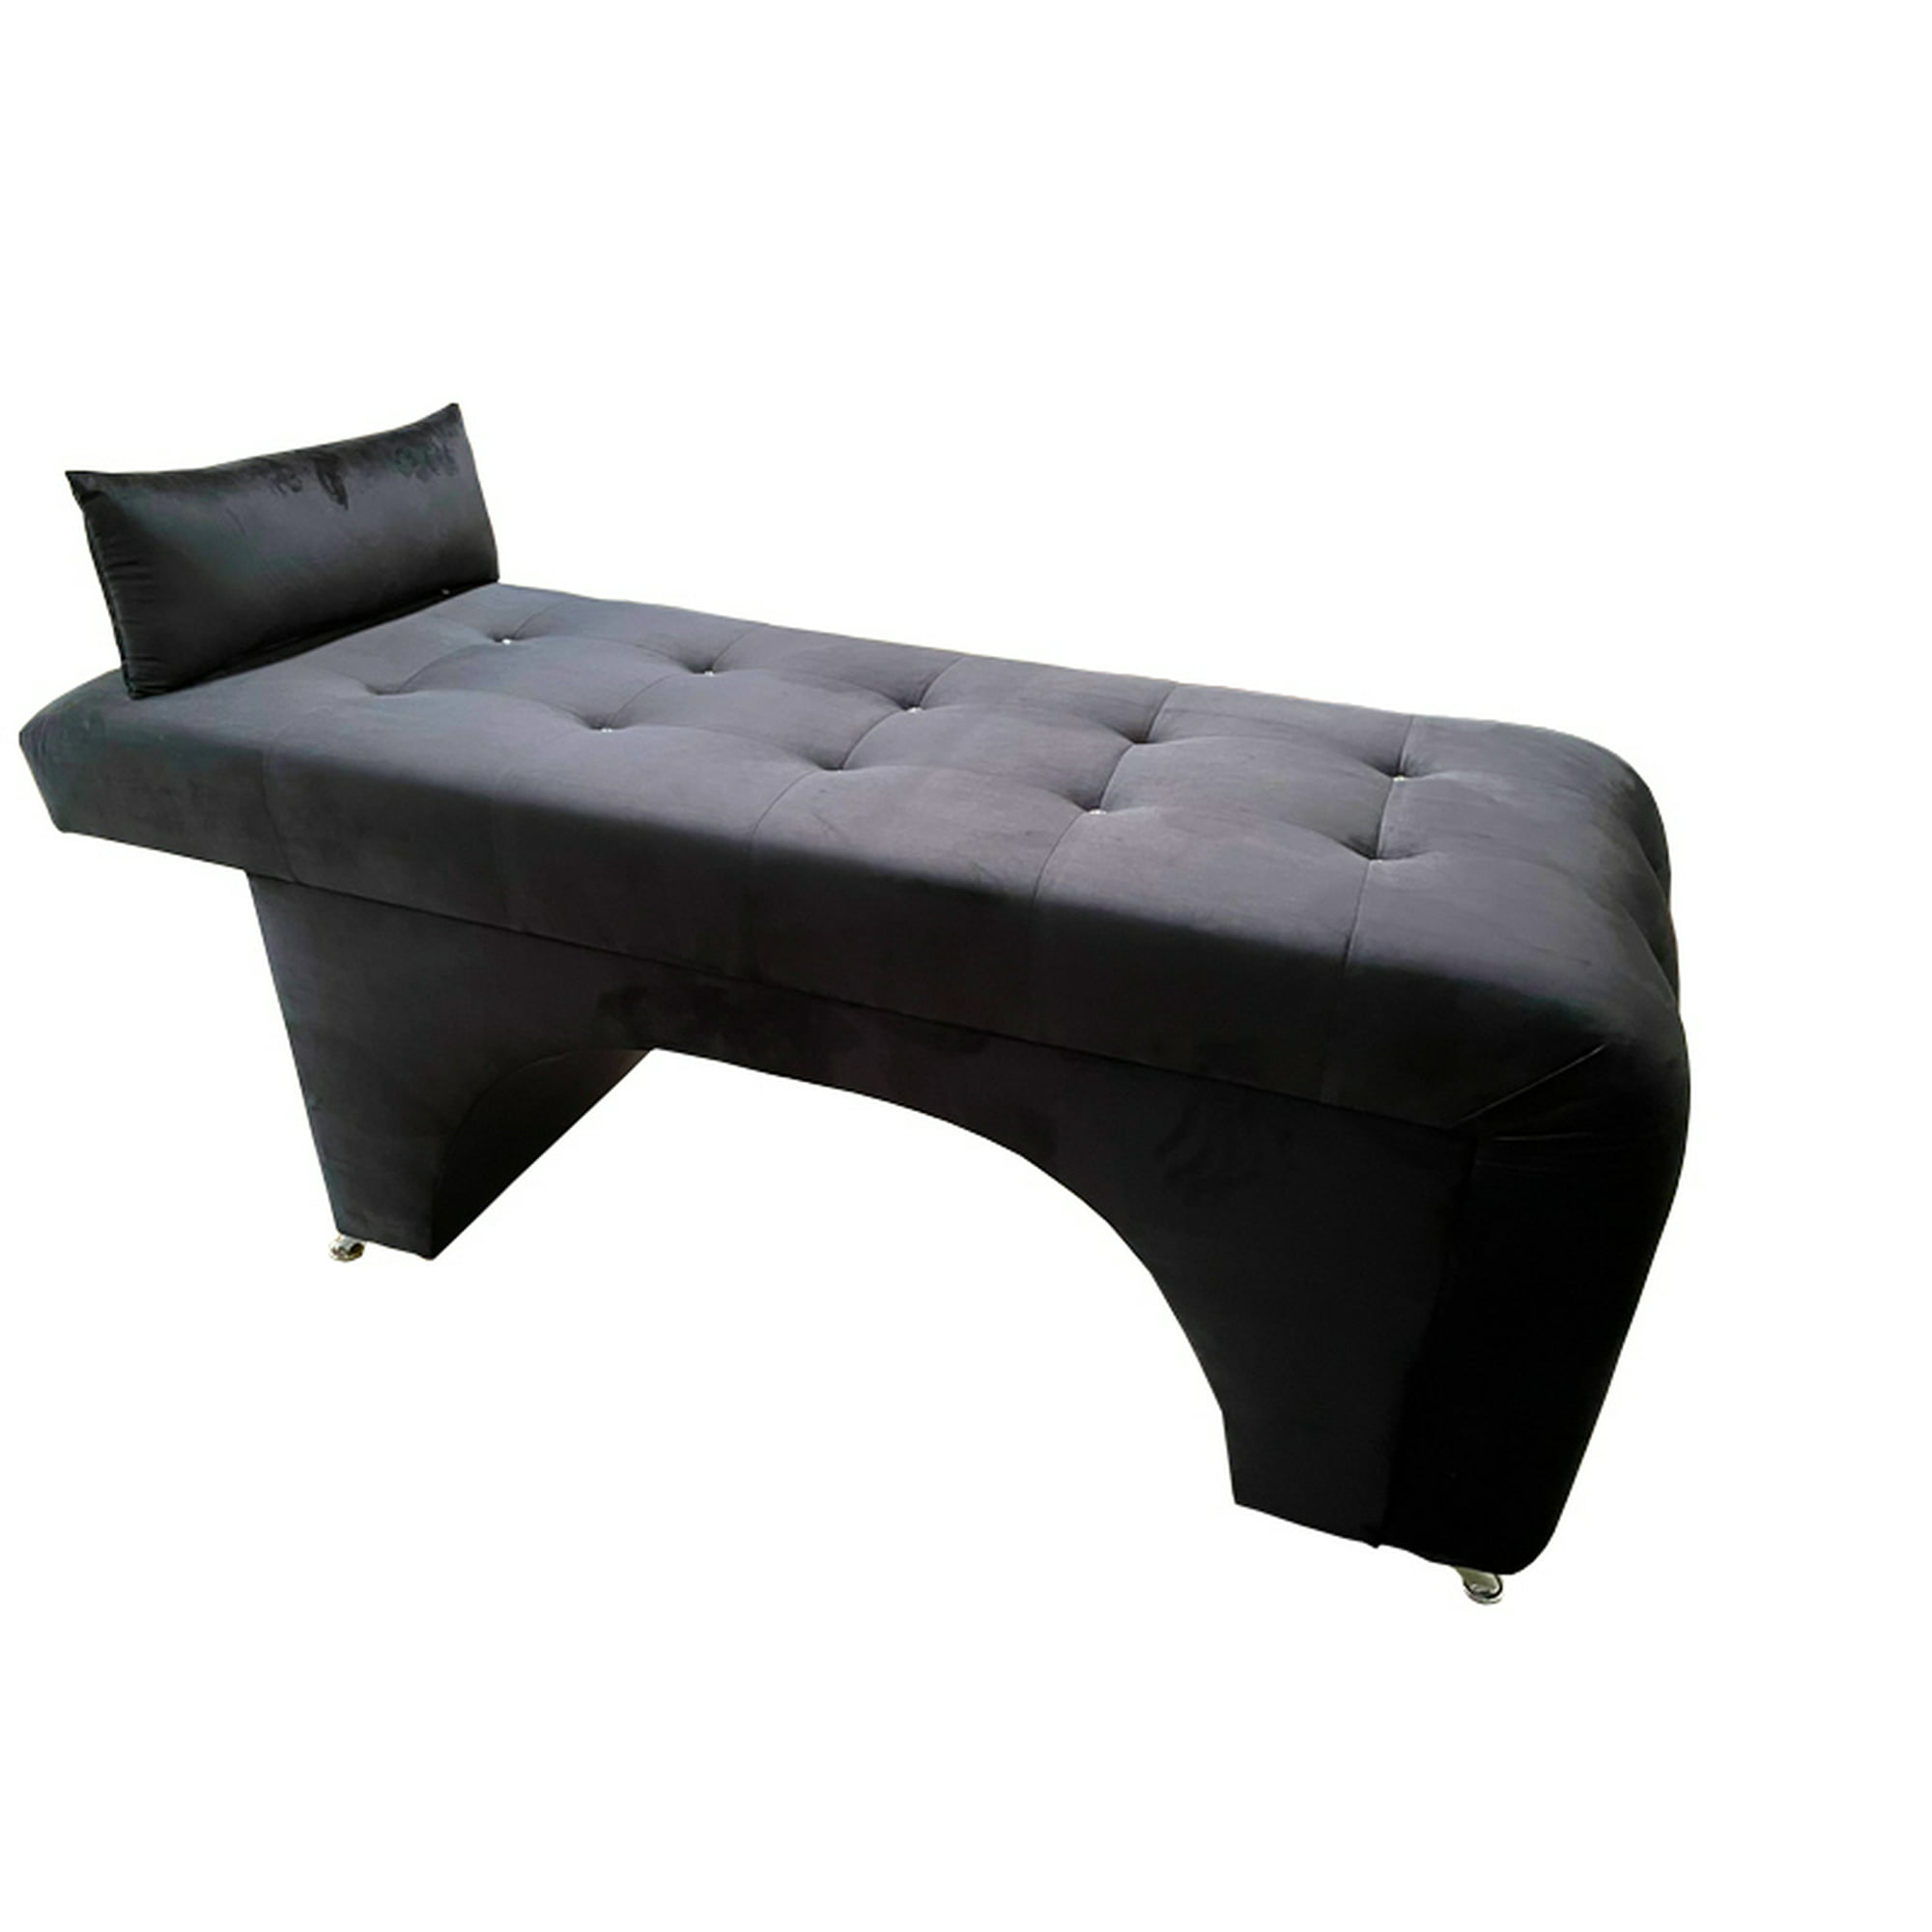 Camilla para lashista, en tela suede negro, tu espacio muebles. tu espacio muebles tu espacio muebles minimalista